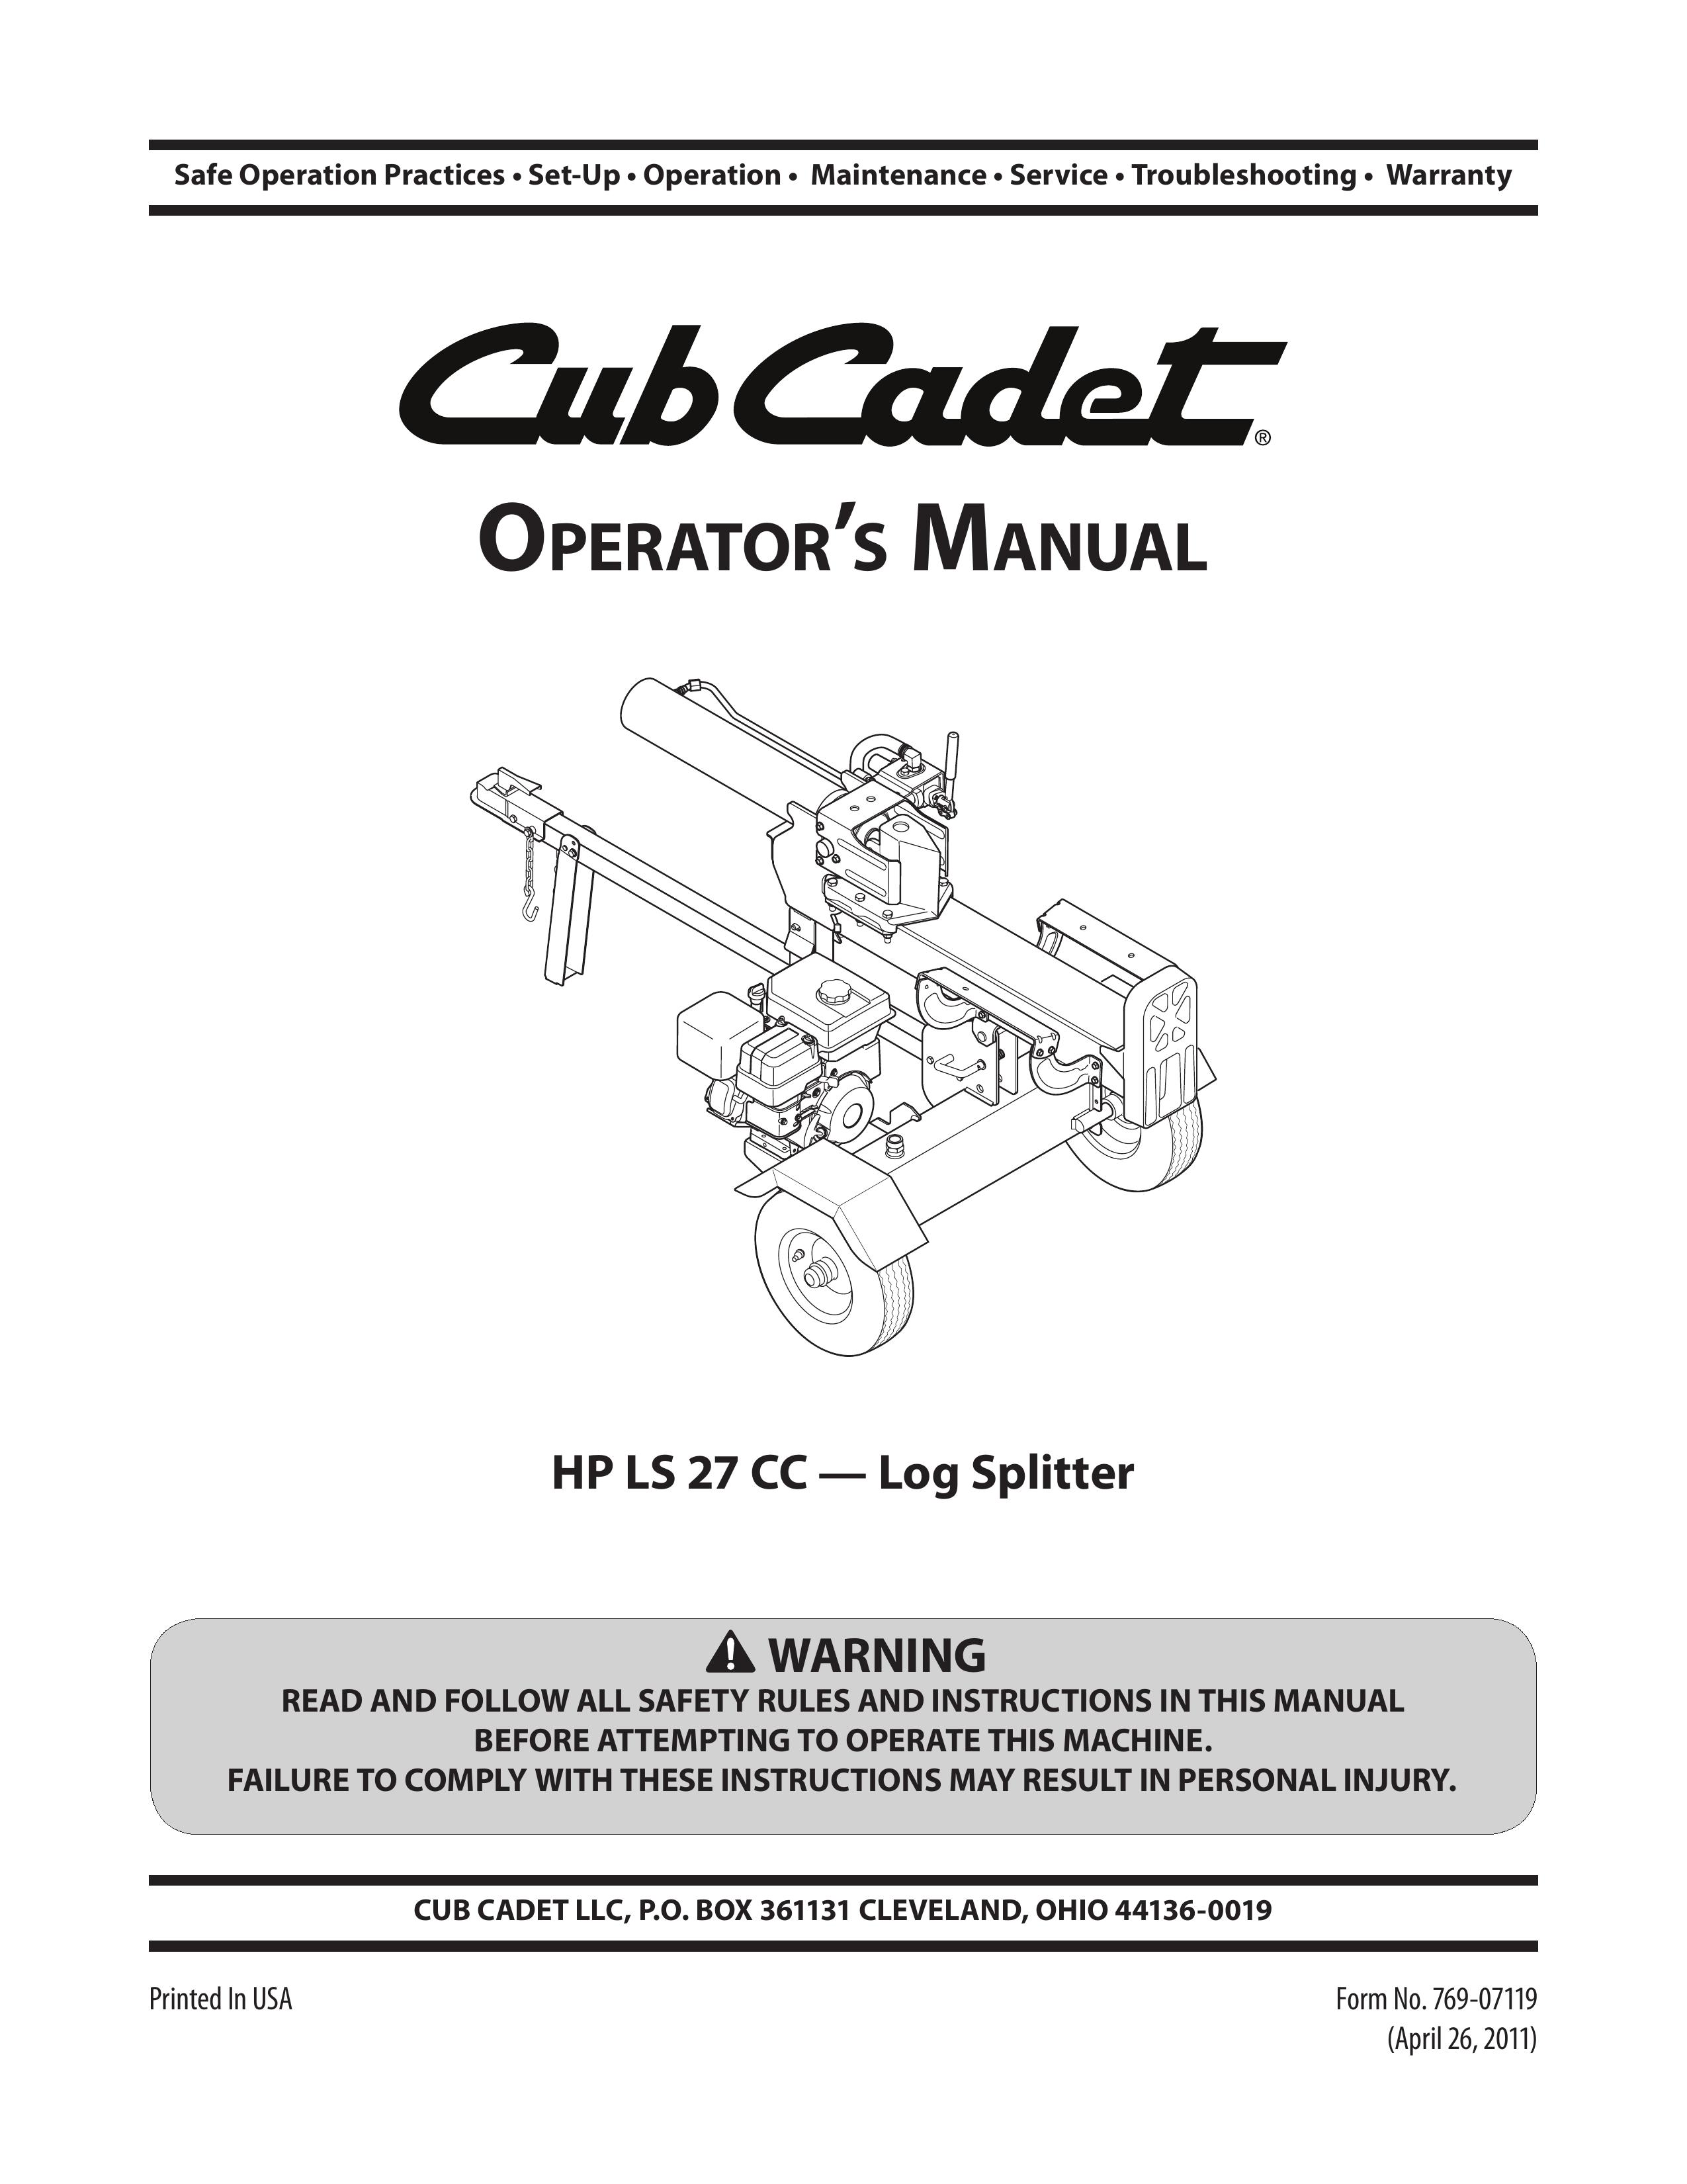 Cub Cadet HP LS 27 CC Log Splitter User Manual